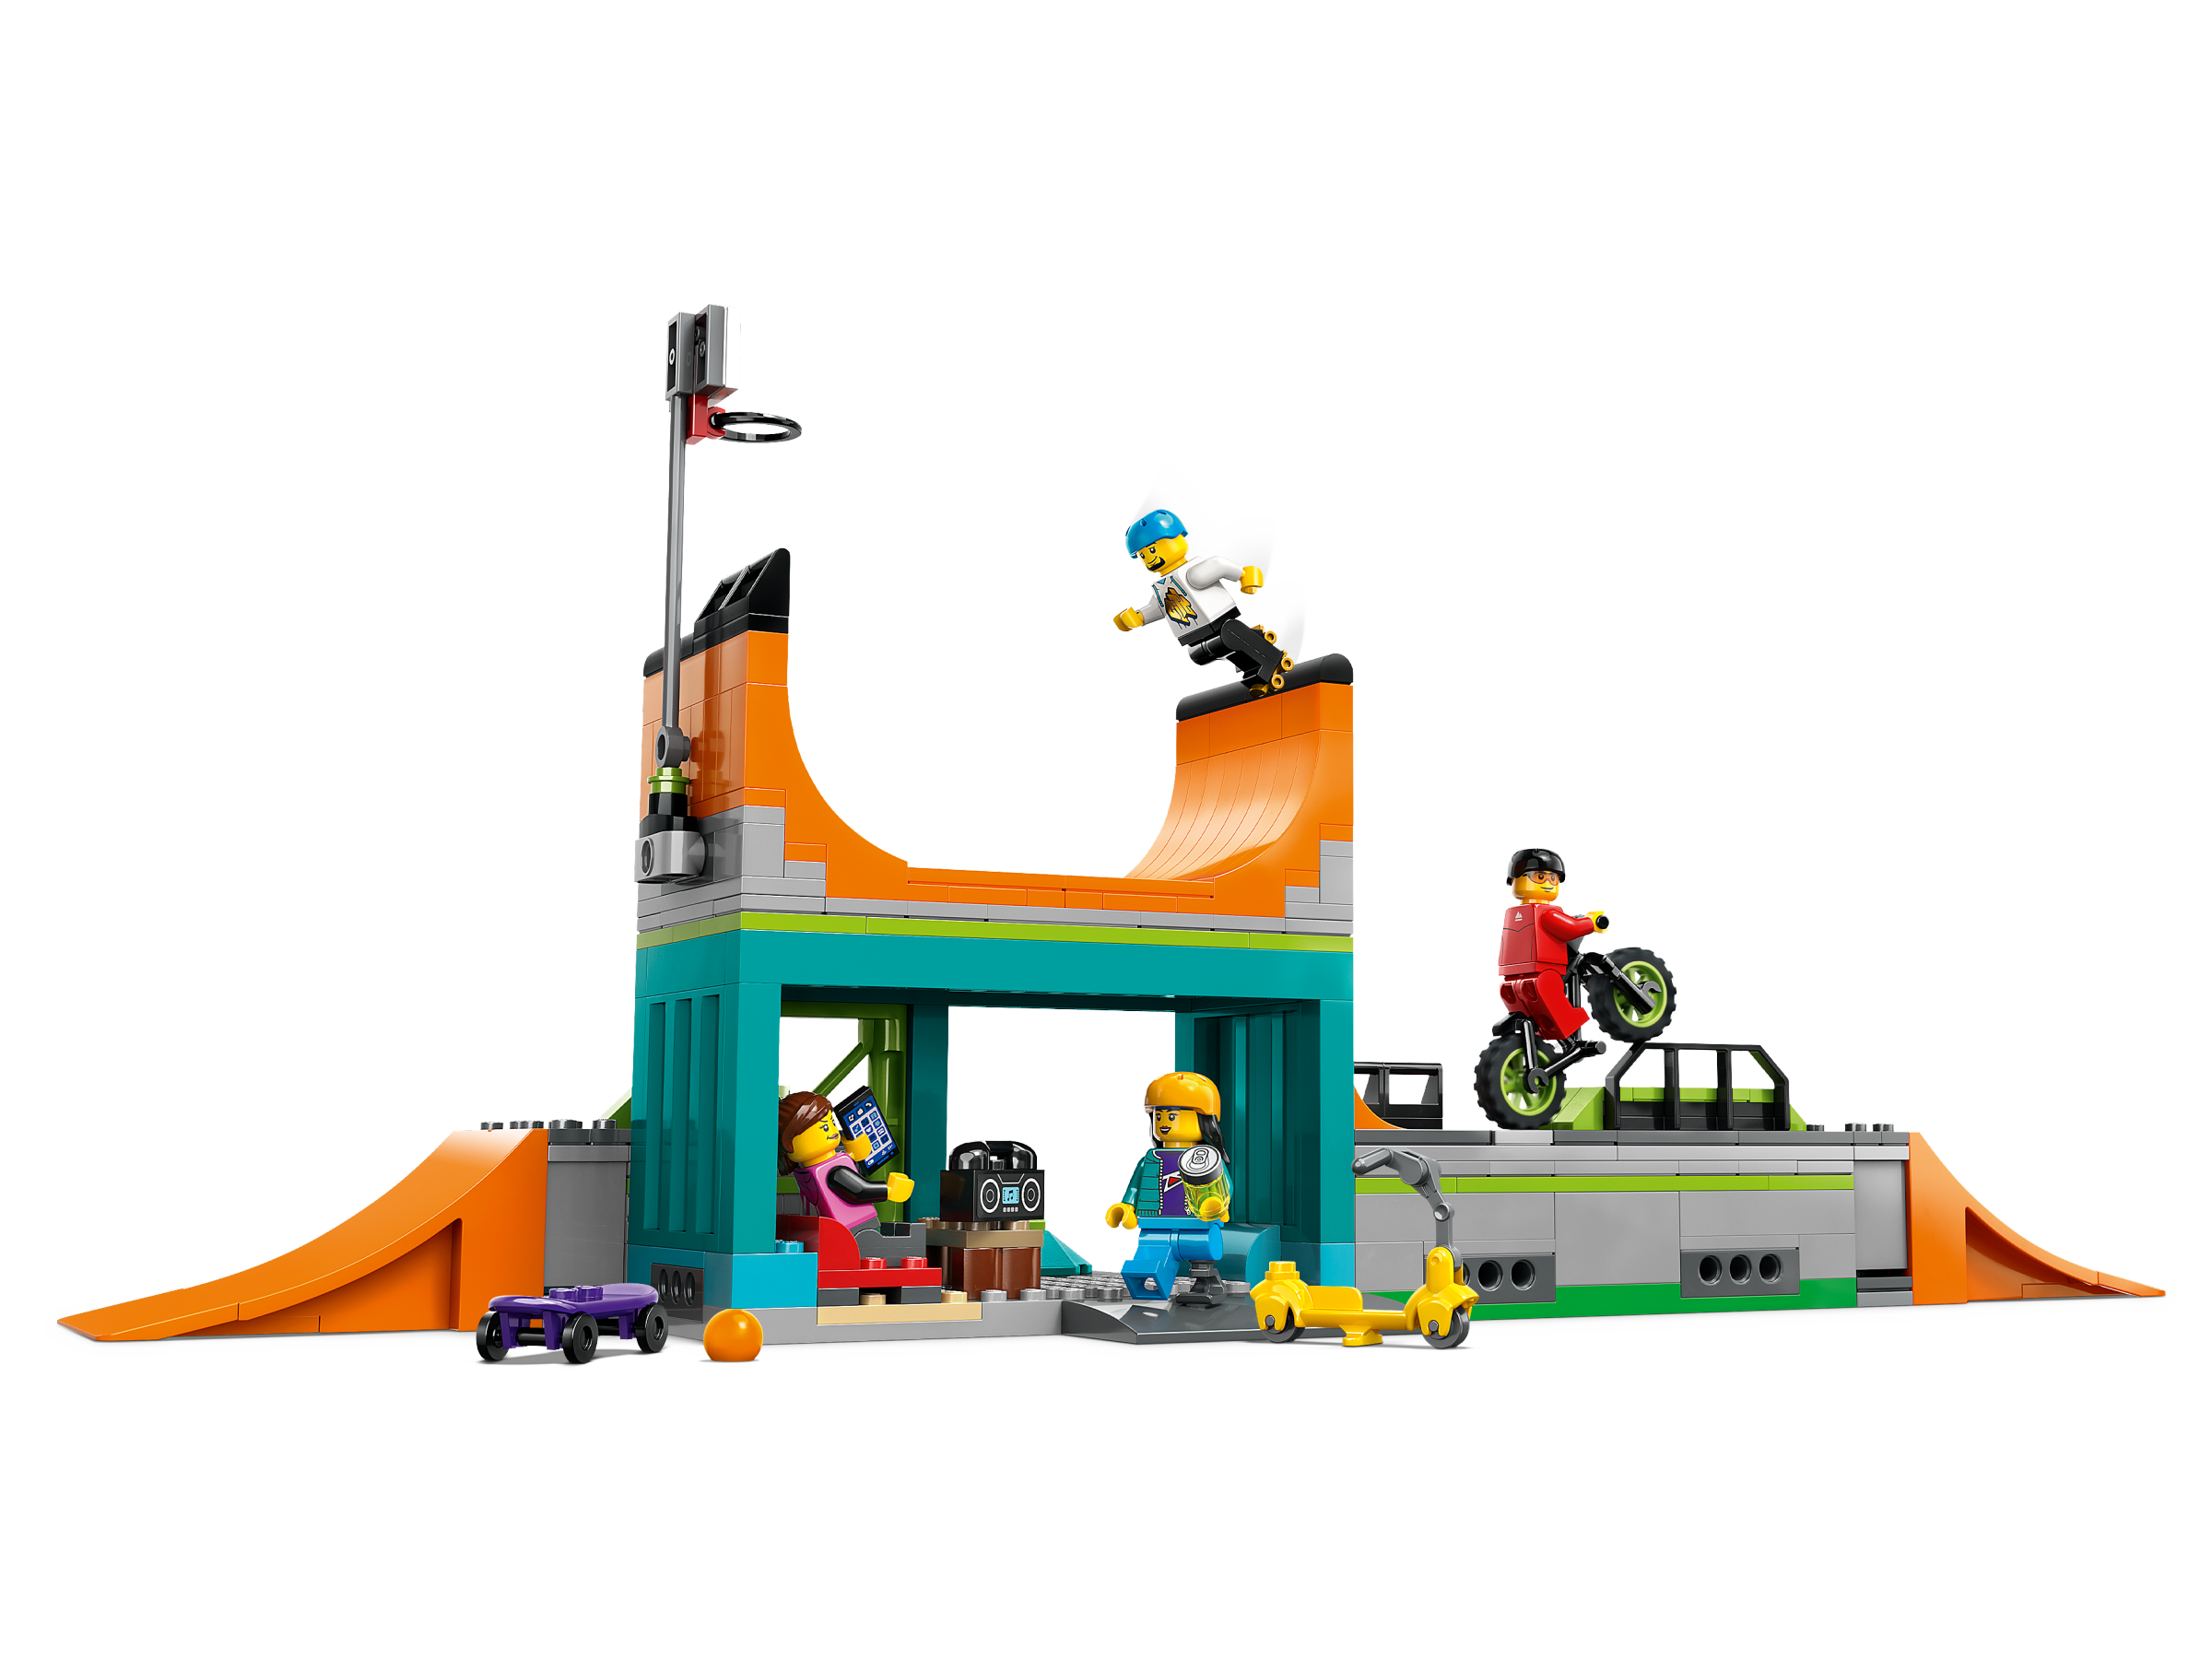 LEGO IDEAS - Never Stop Skate Park